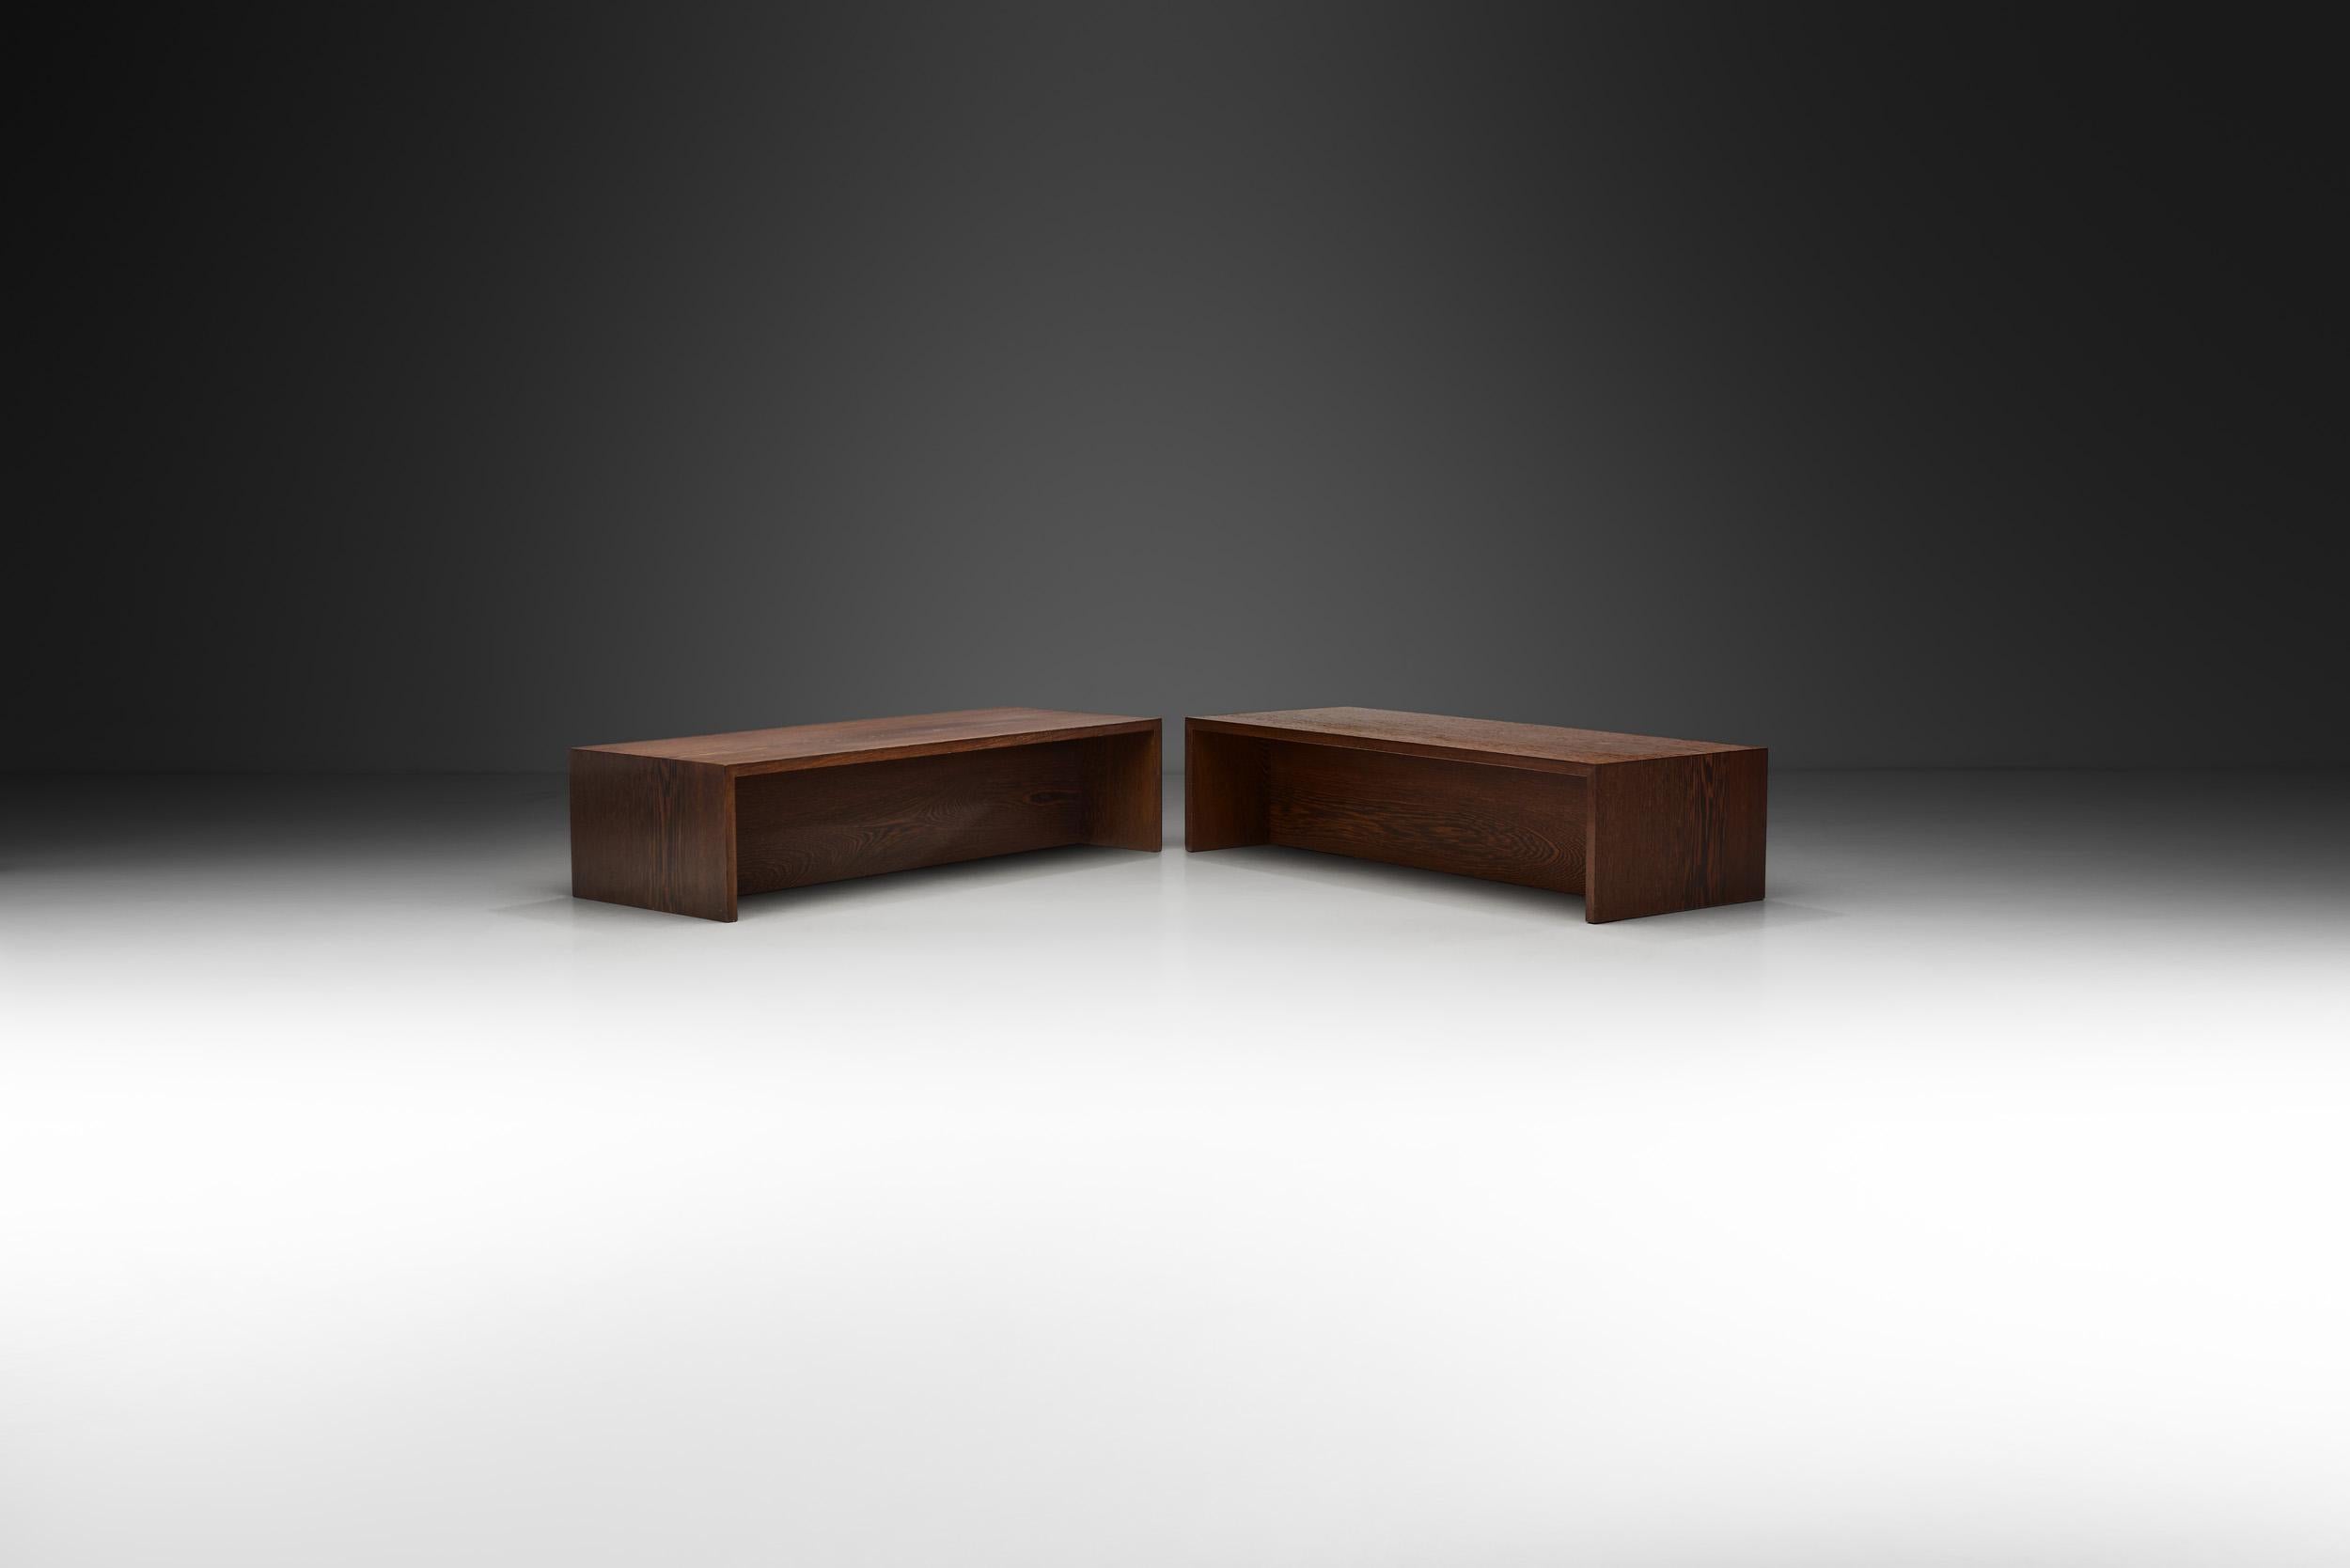 Dieses schlichte, stilvolle Paar Bänke ist in seiner Einfachheit vielseitig. Sie können als Tische verwendet werden, lassen sich aber dank ihrer sehr stabilen Bauweise auch problemlos als Sitzgelegenheiten nutzen.

Diese Bänke sind komplett mit